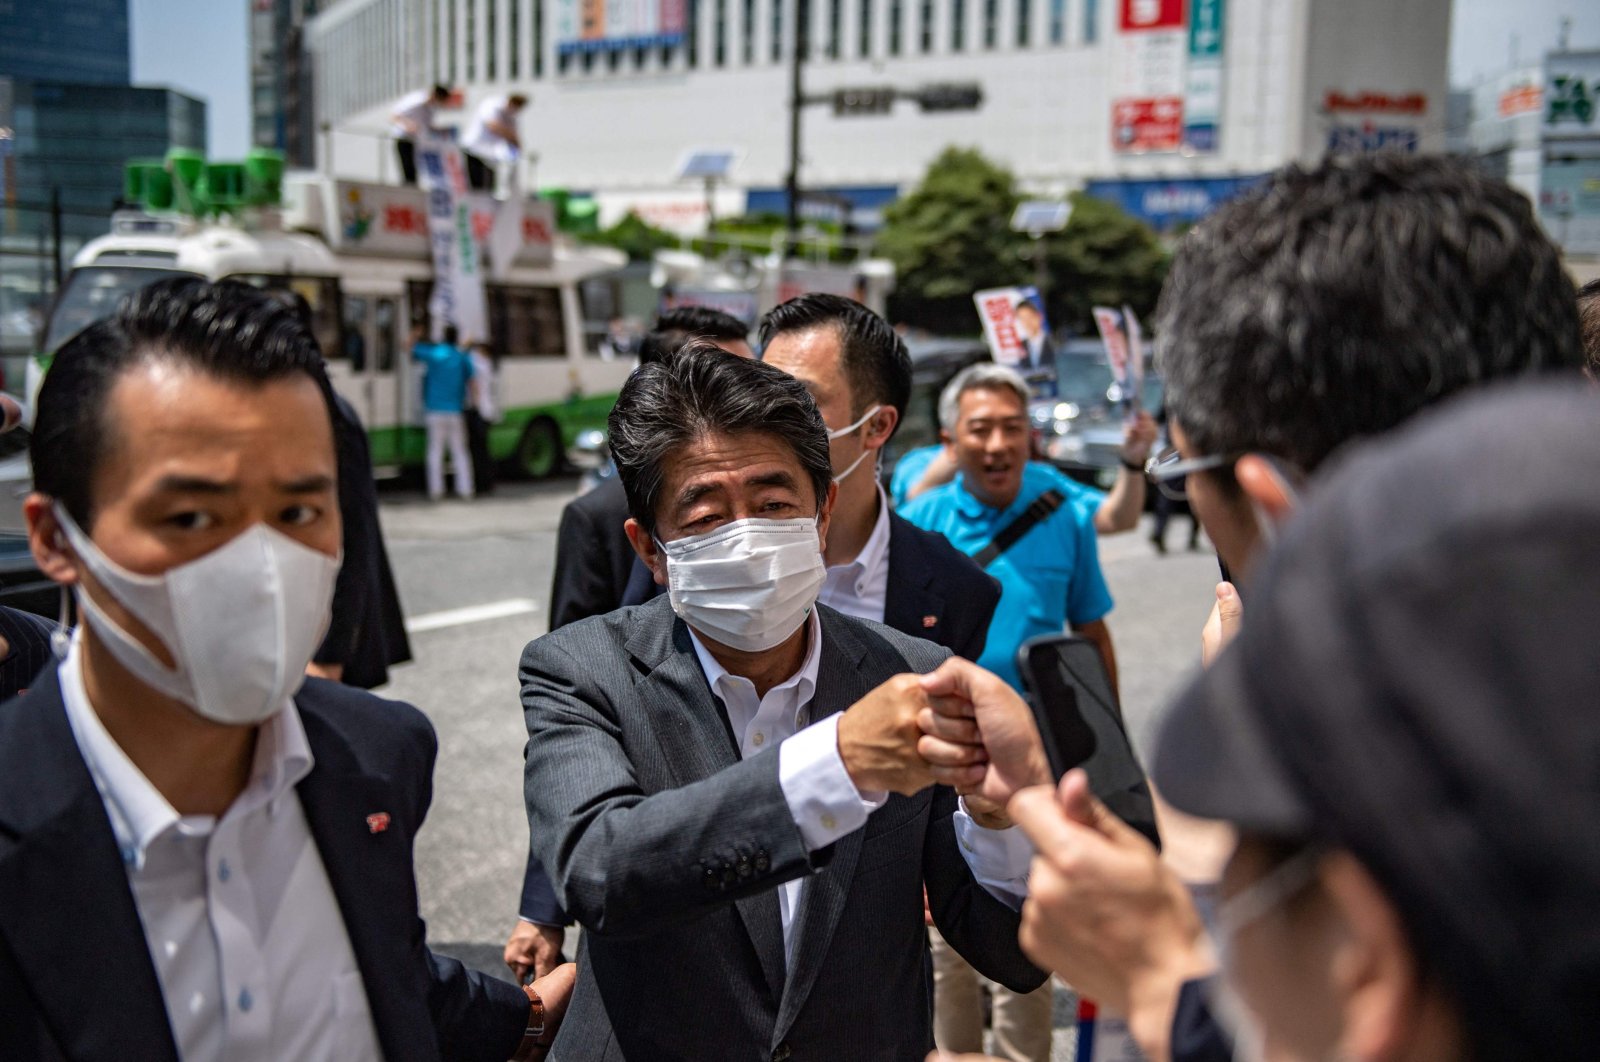 Mantan pemimpin Jepang Shinzo Abe ditembak saat berpidato, dikhawatirkan tewas